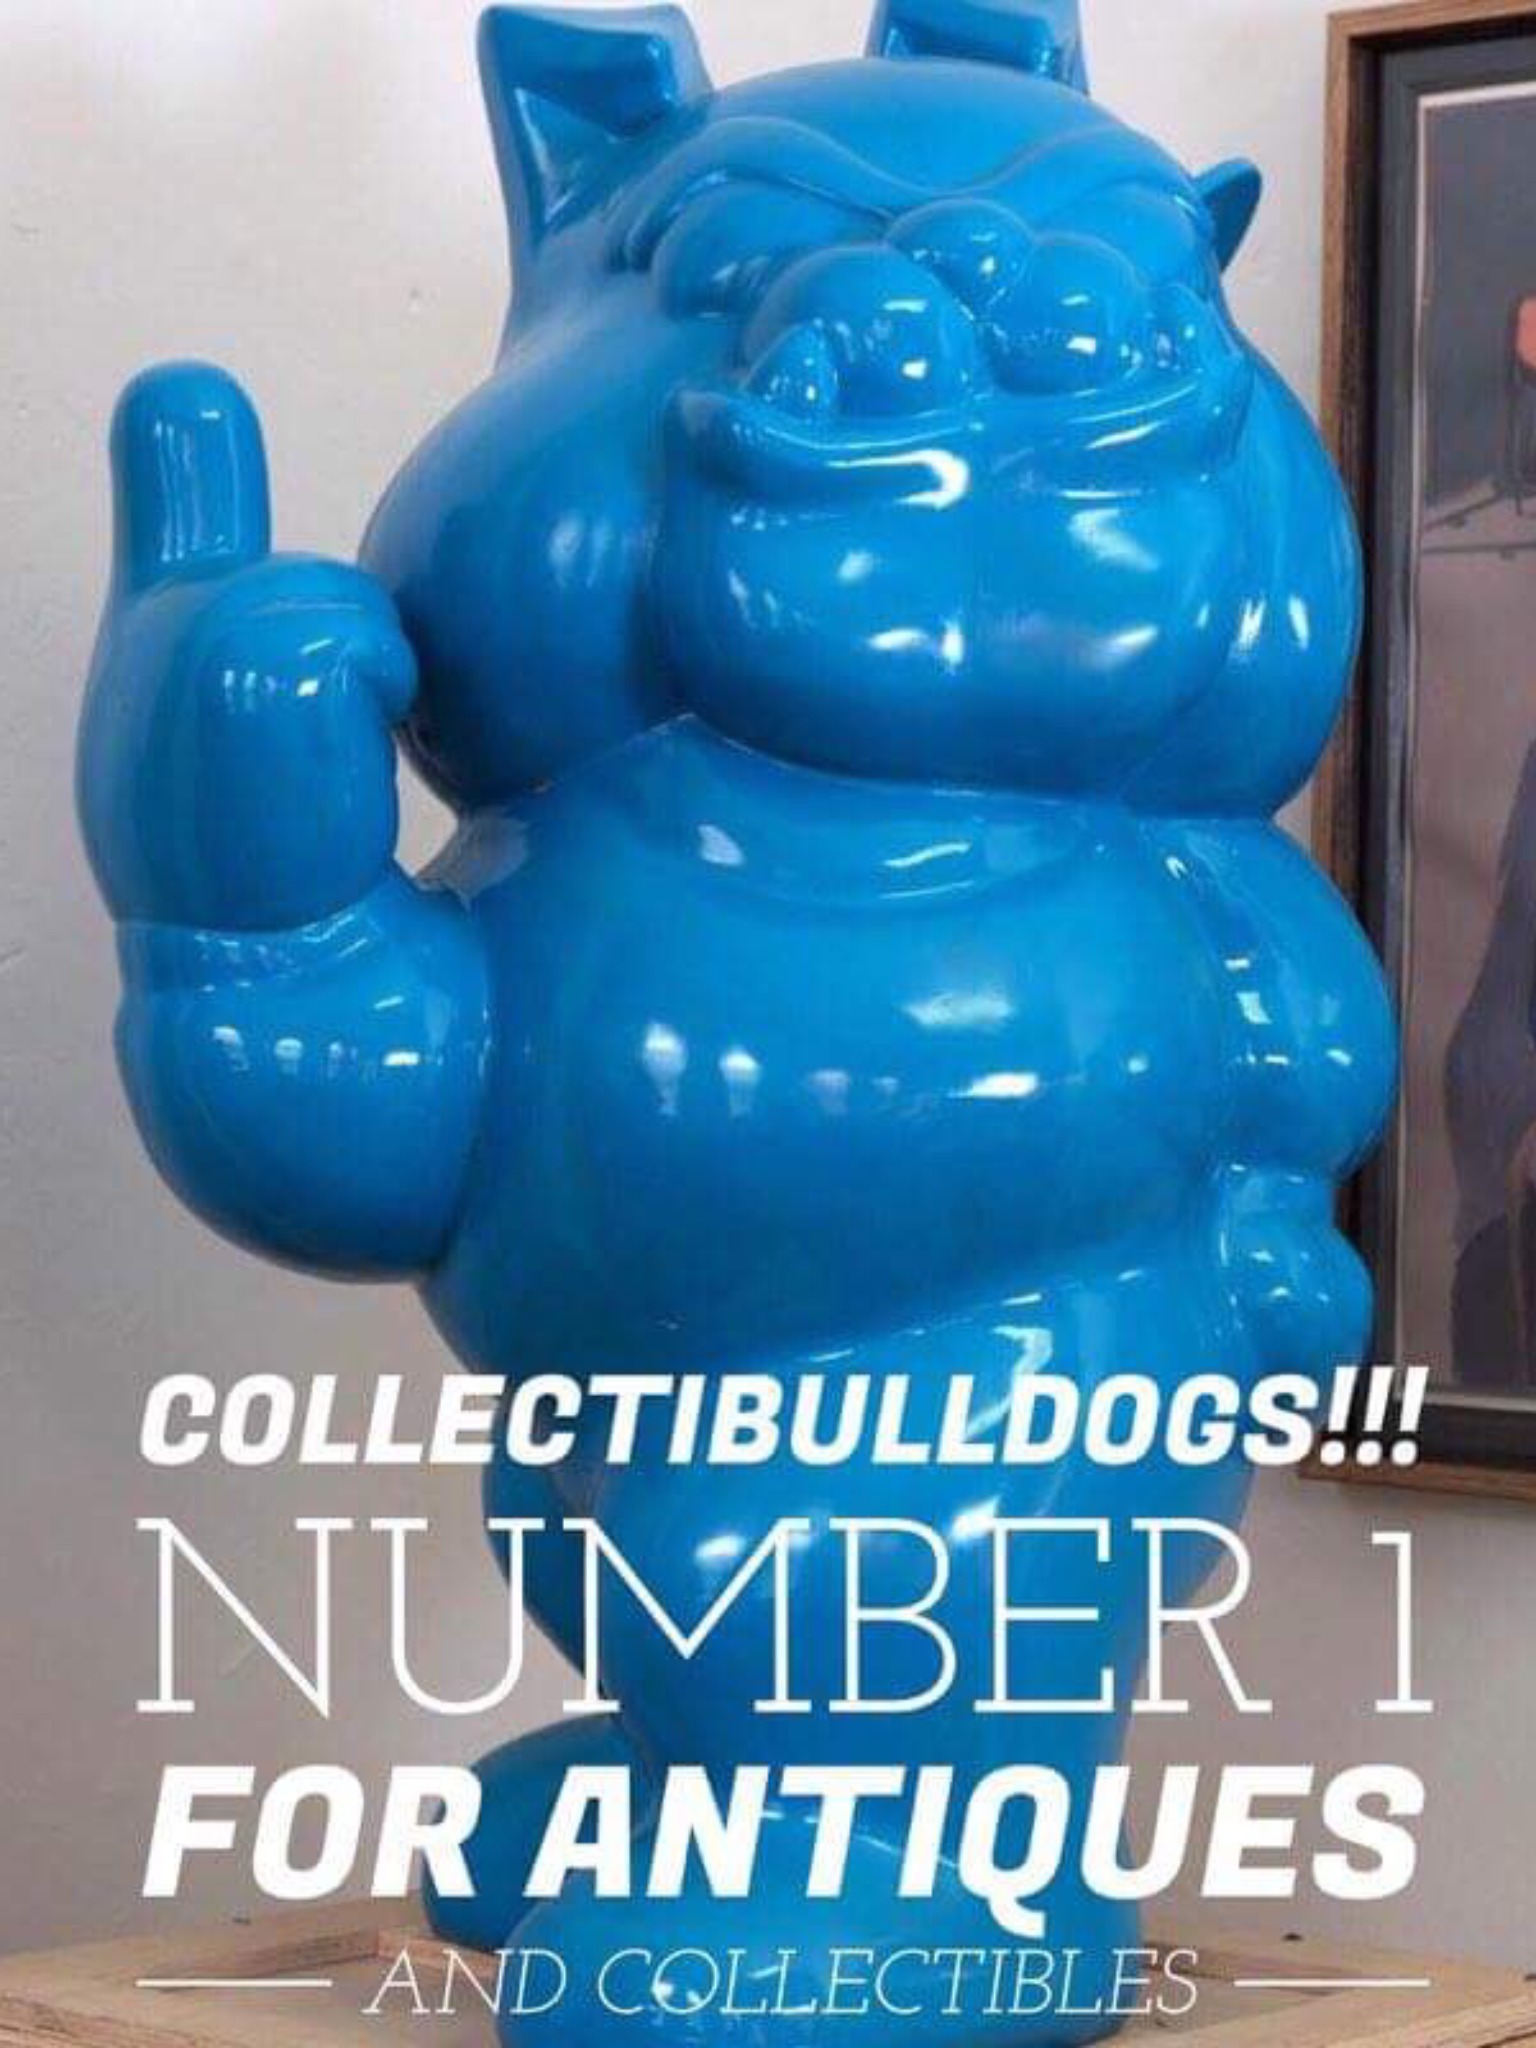 1st Collectibulldogs 